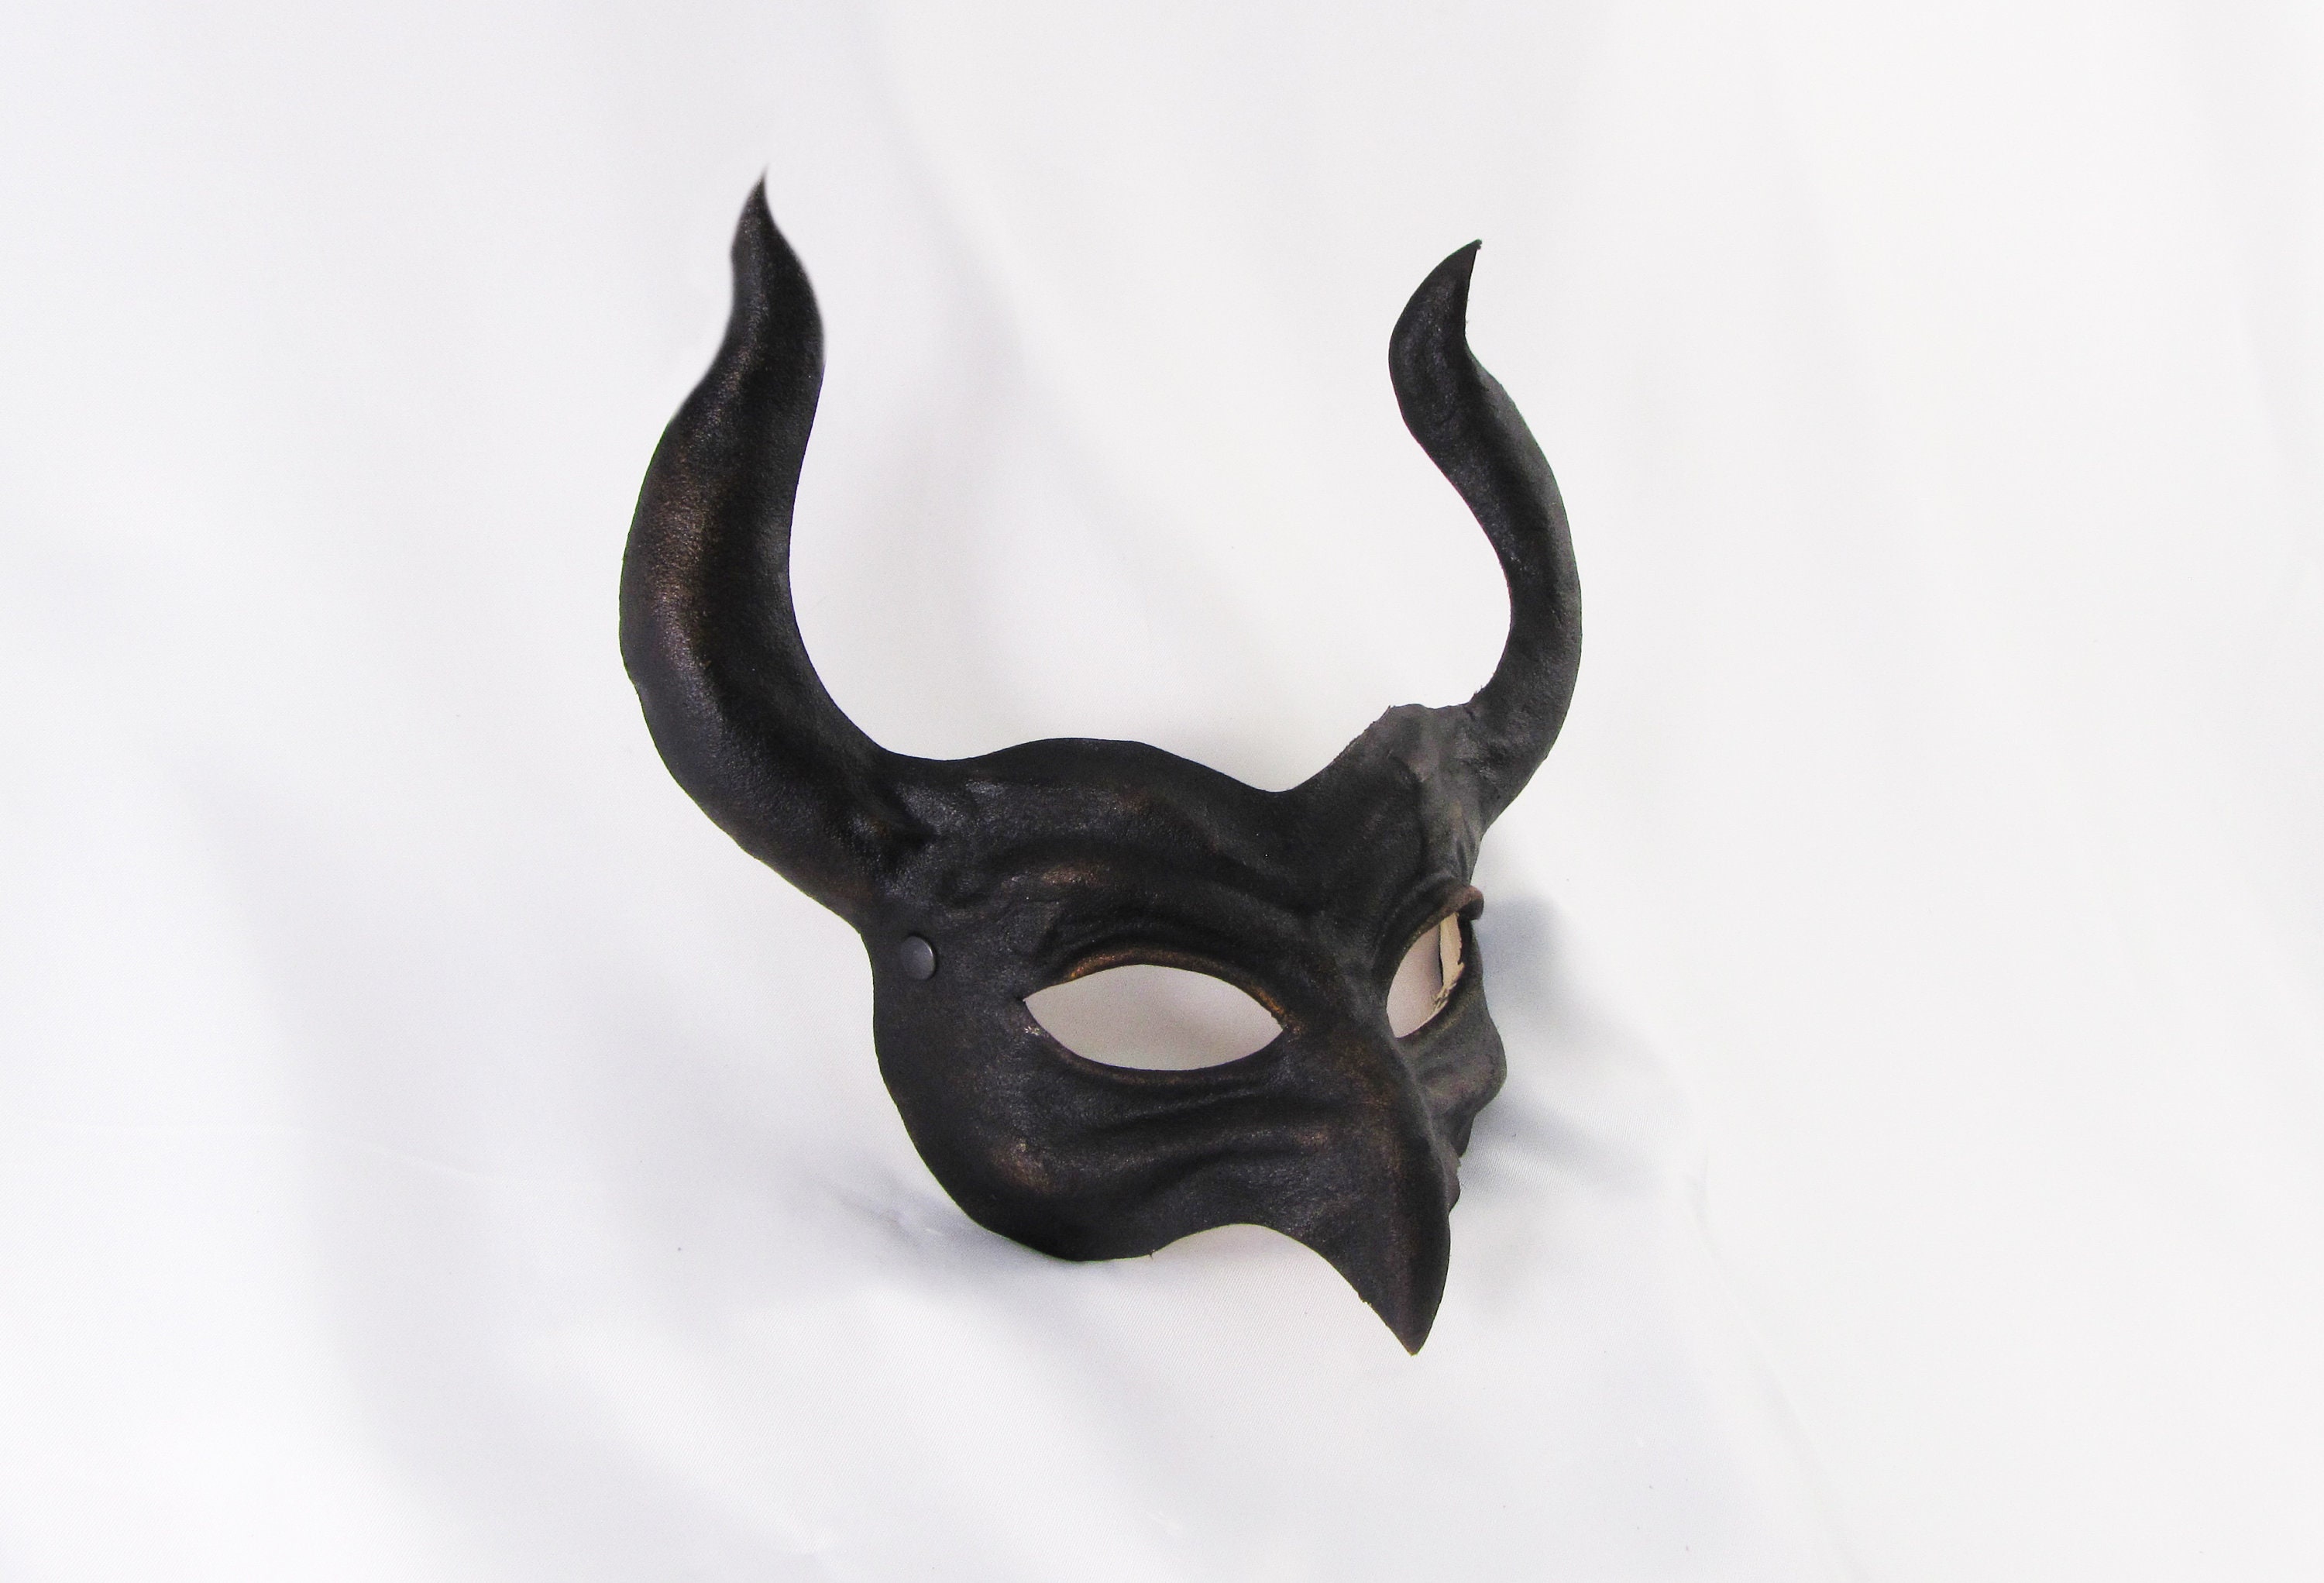 Kleding Herenkleding Pakken Demon masker duivel rode lederen hoorn kostuum cospaly larp renaissance wicca heidense magie brandende man ritueel gothic 